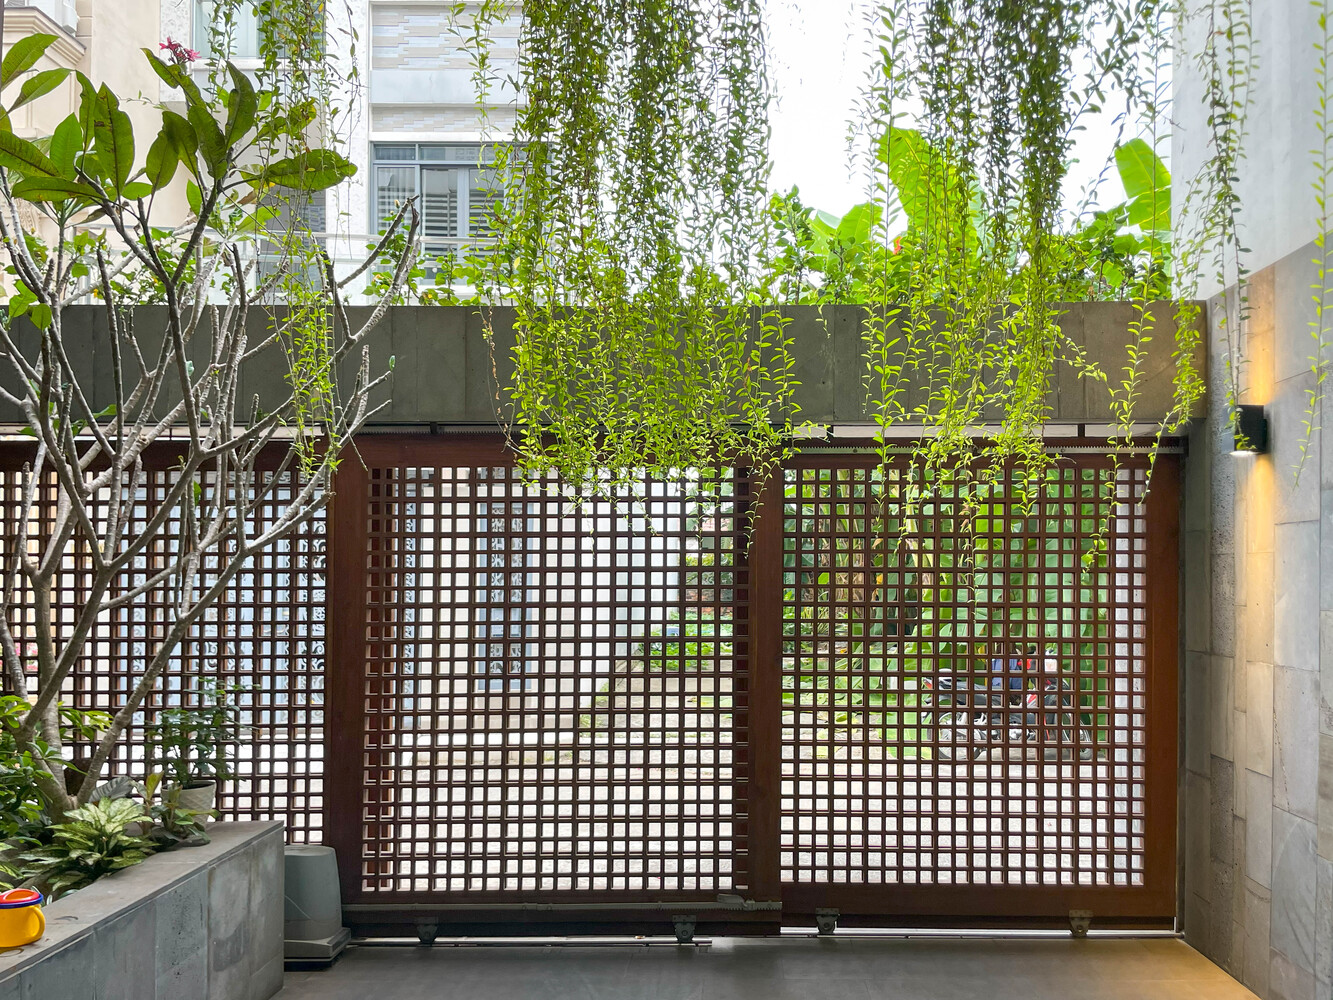 Nhà Vải/Lâm Nin Architects + 90odesign